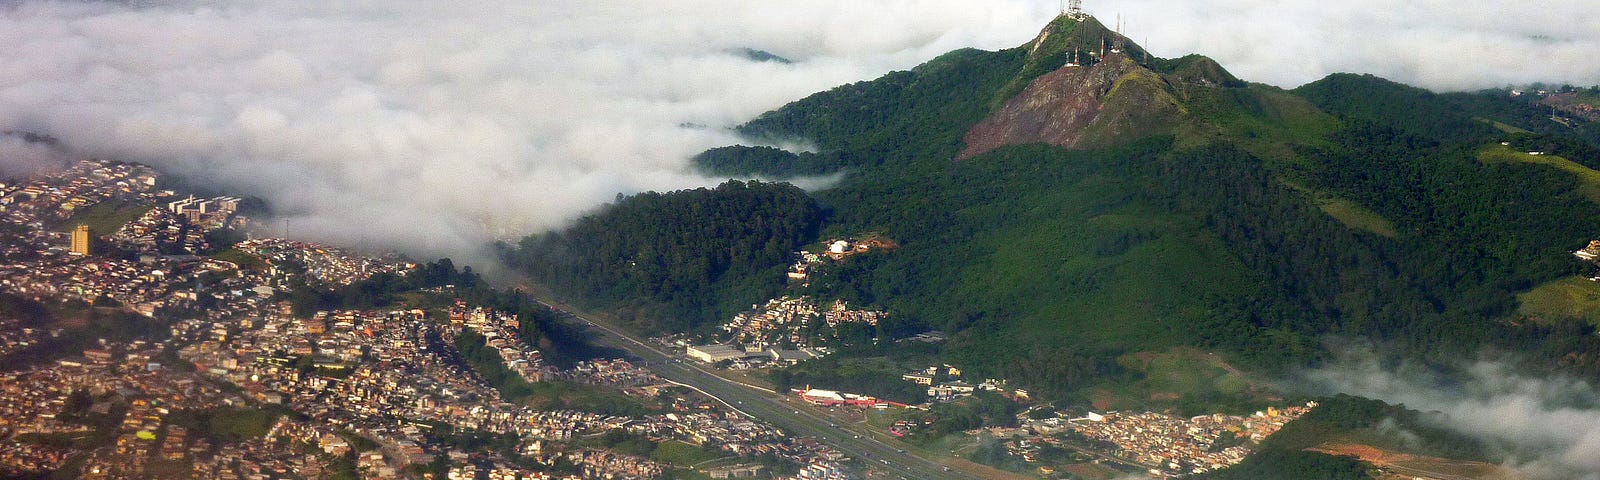 Jaguara Peak with a city beneath it.